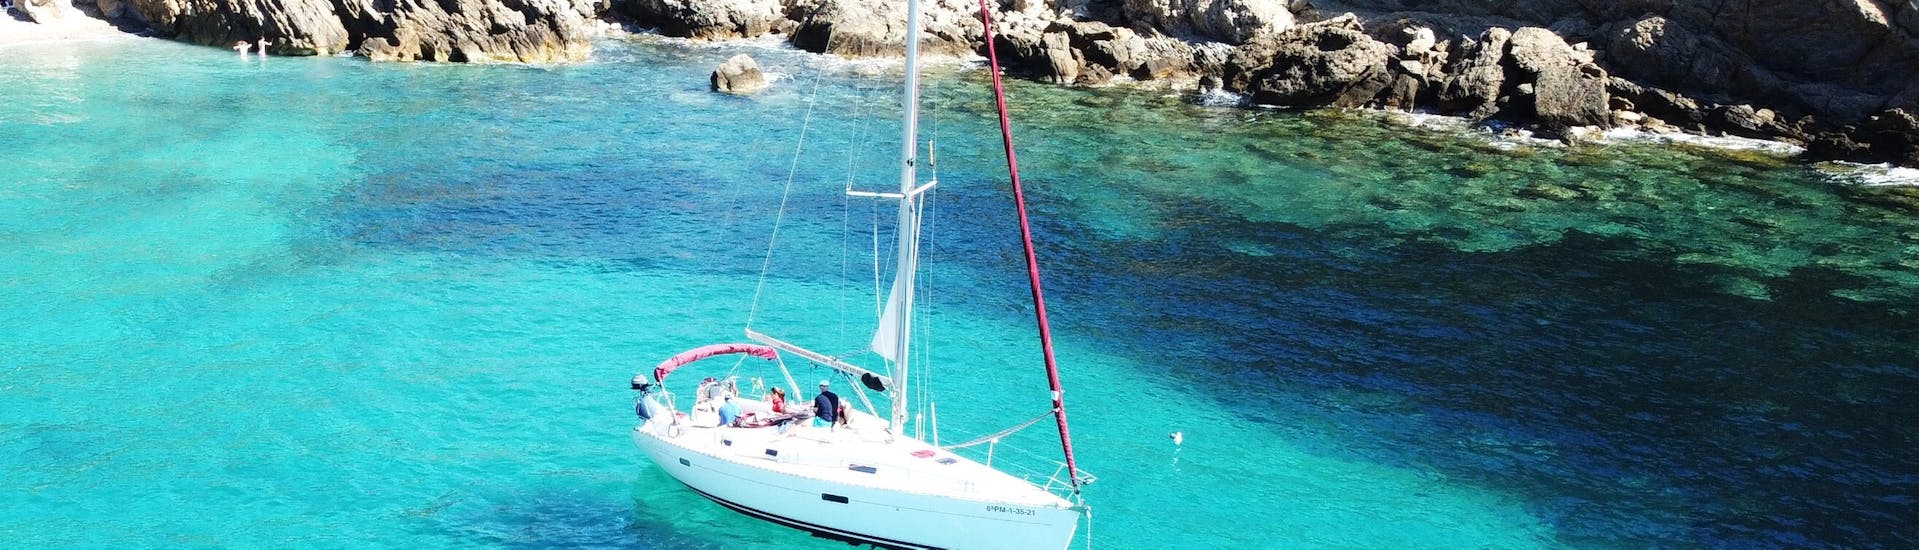 Unser Boot fährt auf dem Wasser während der Privaten Ganztages-Bootsfahrt auf Mallorca ab Port d'Andratx mit Pura Vida Sailing Mallorca.